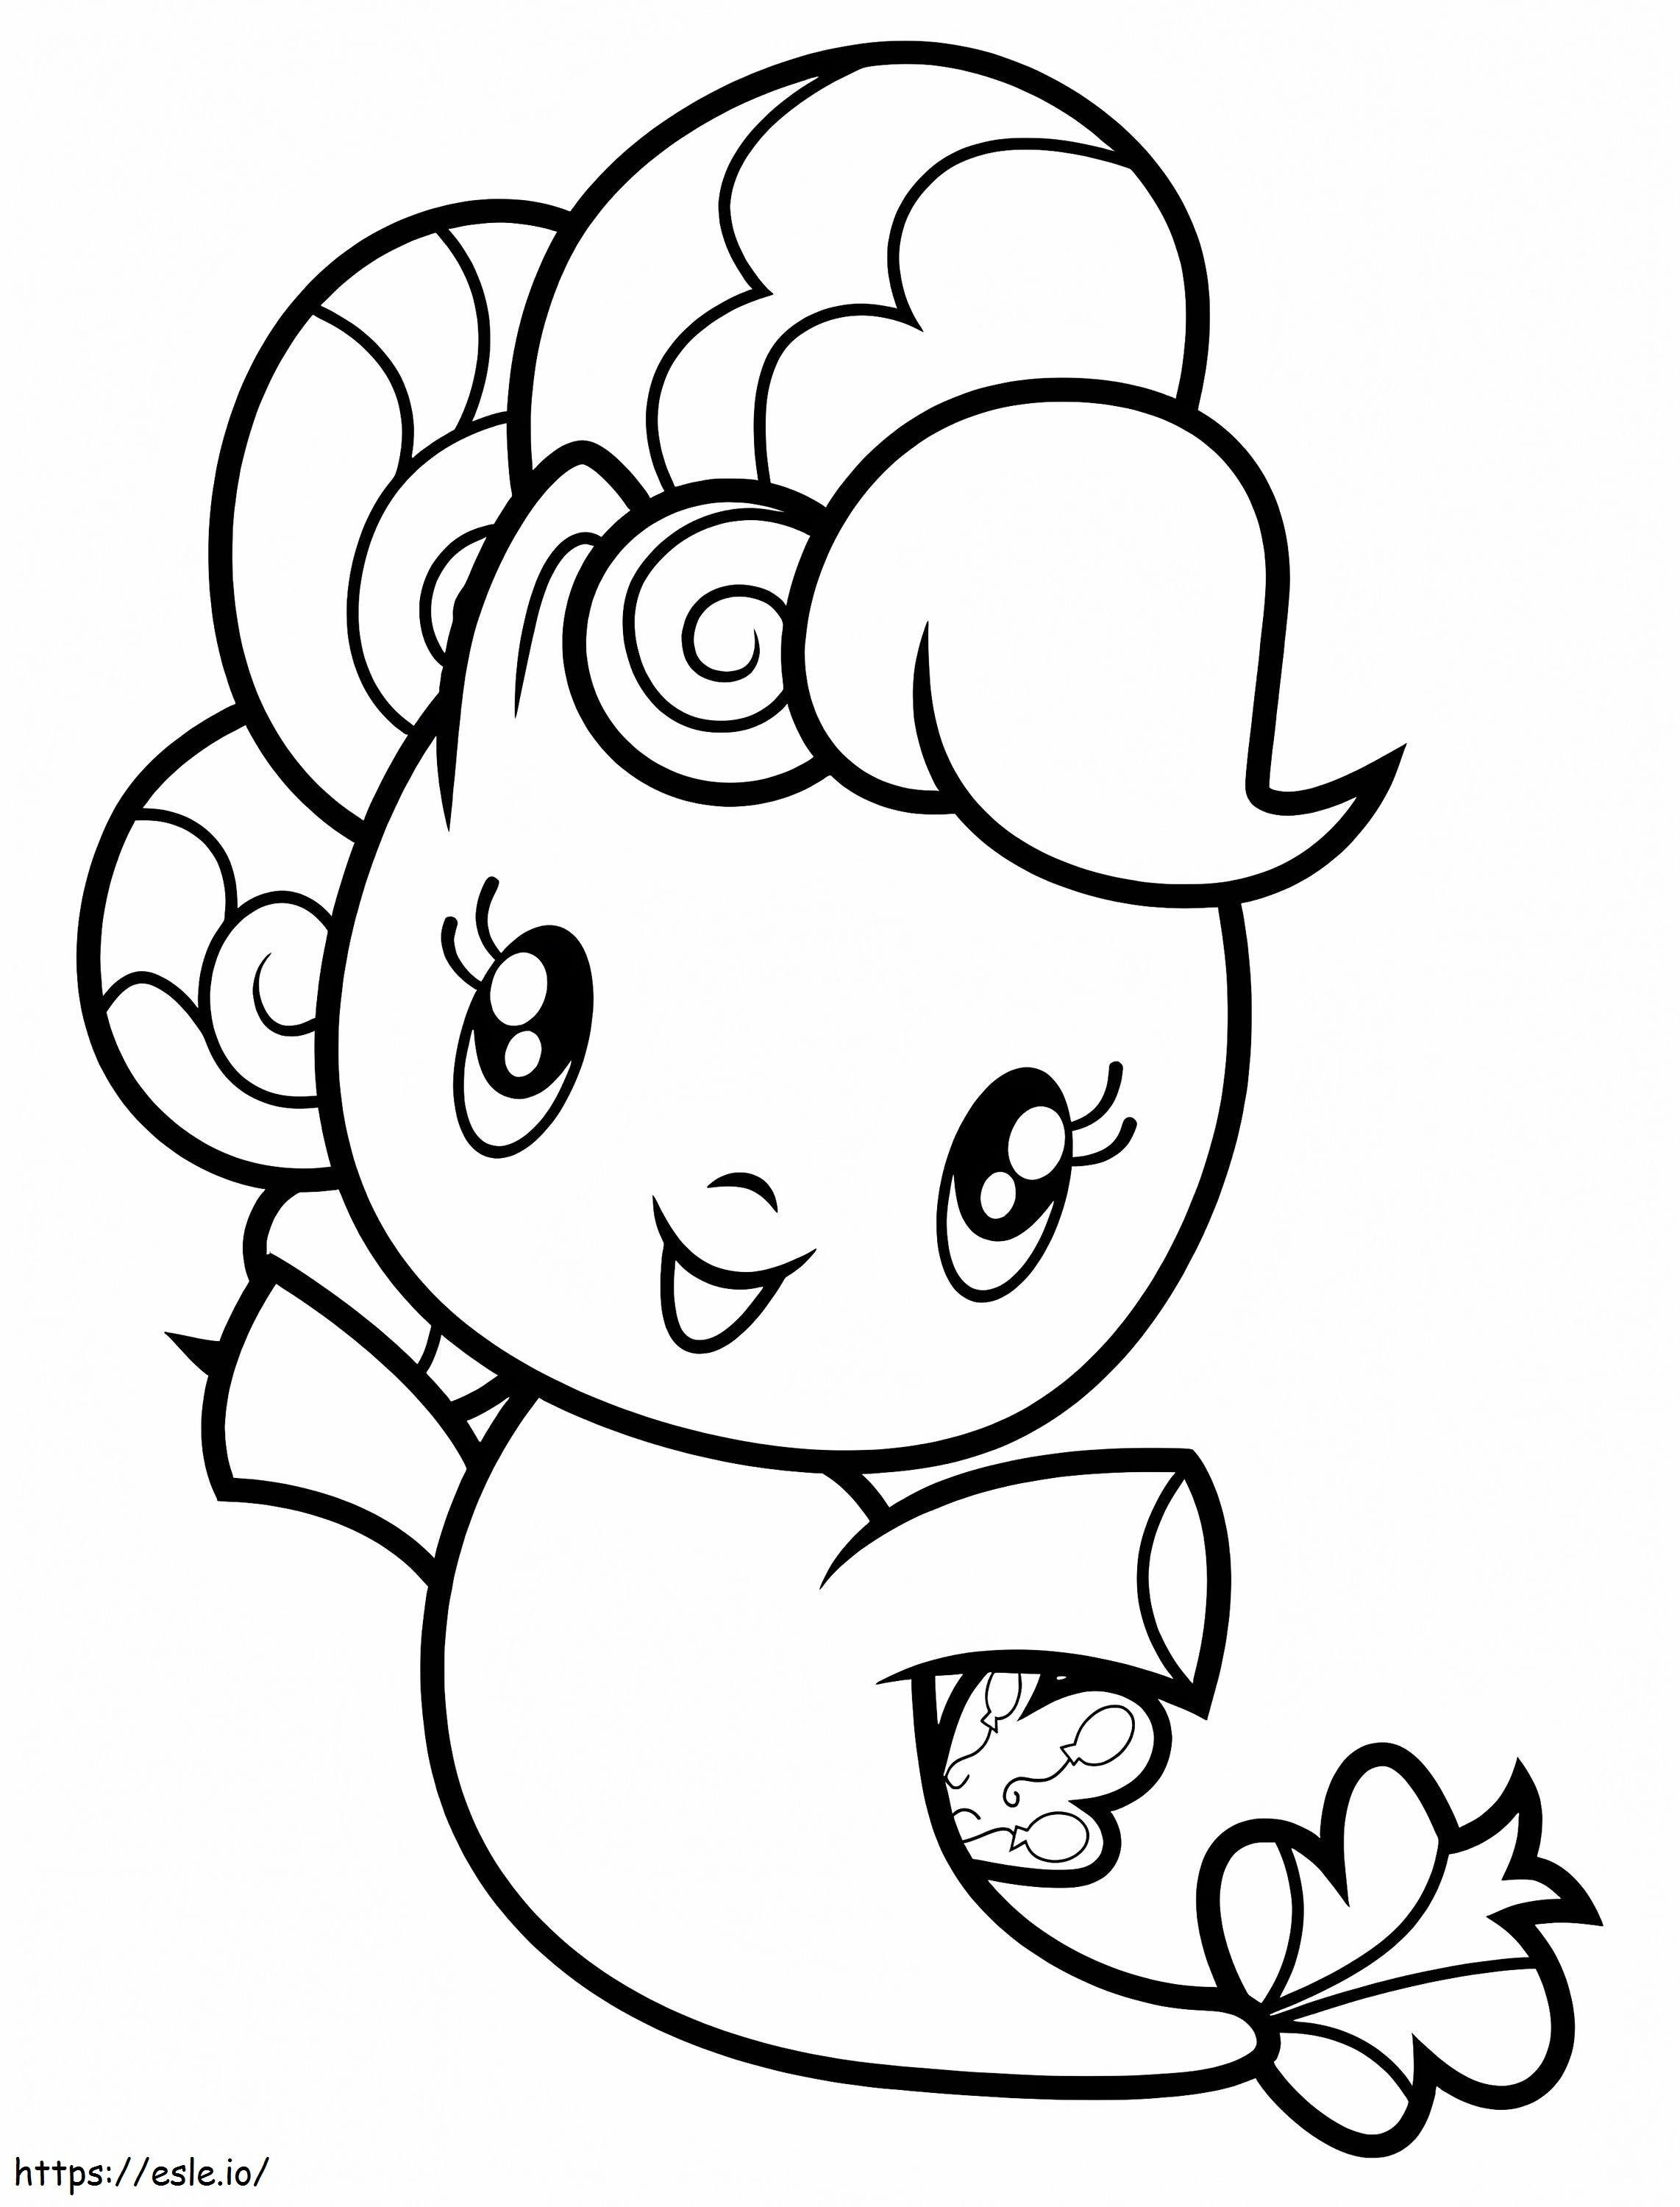 Torta Pinkie da Equipe da Cutie Mark para colorir